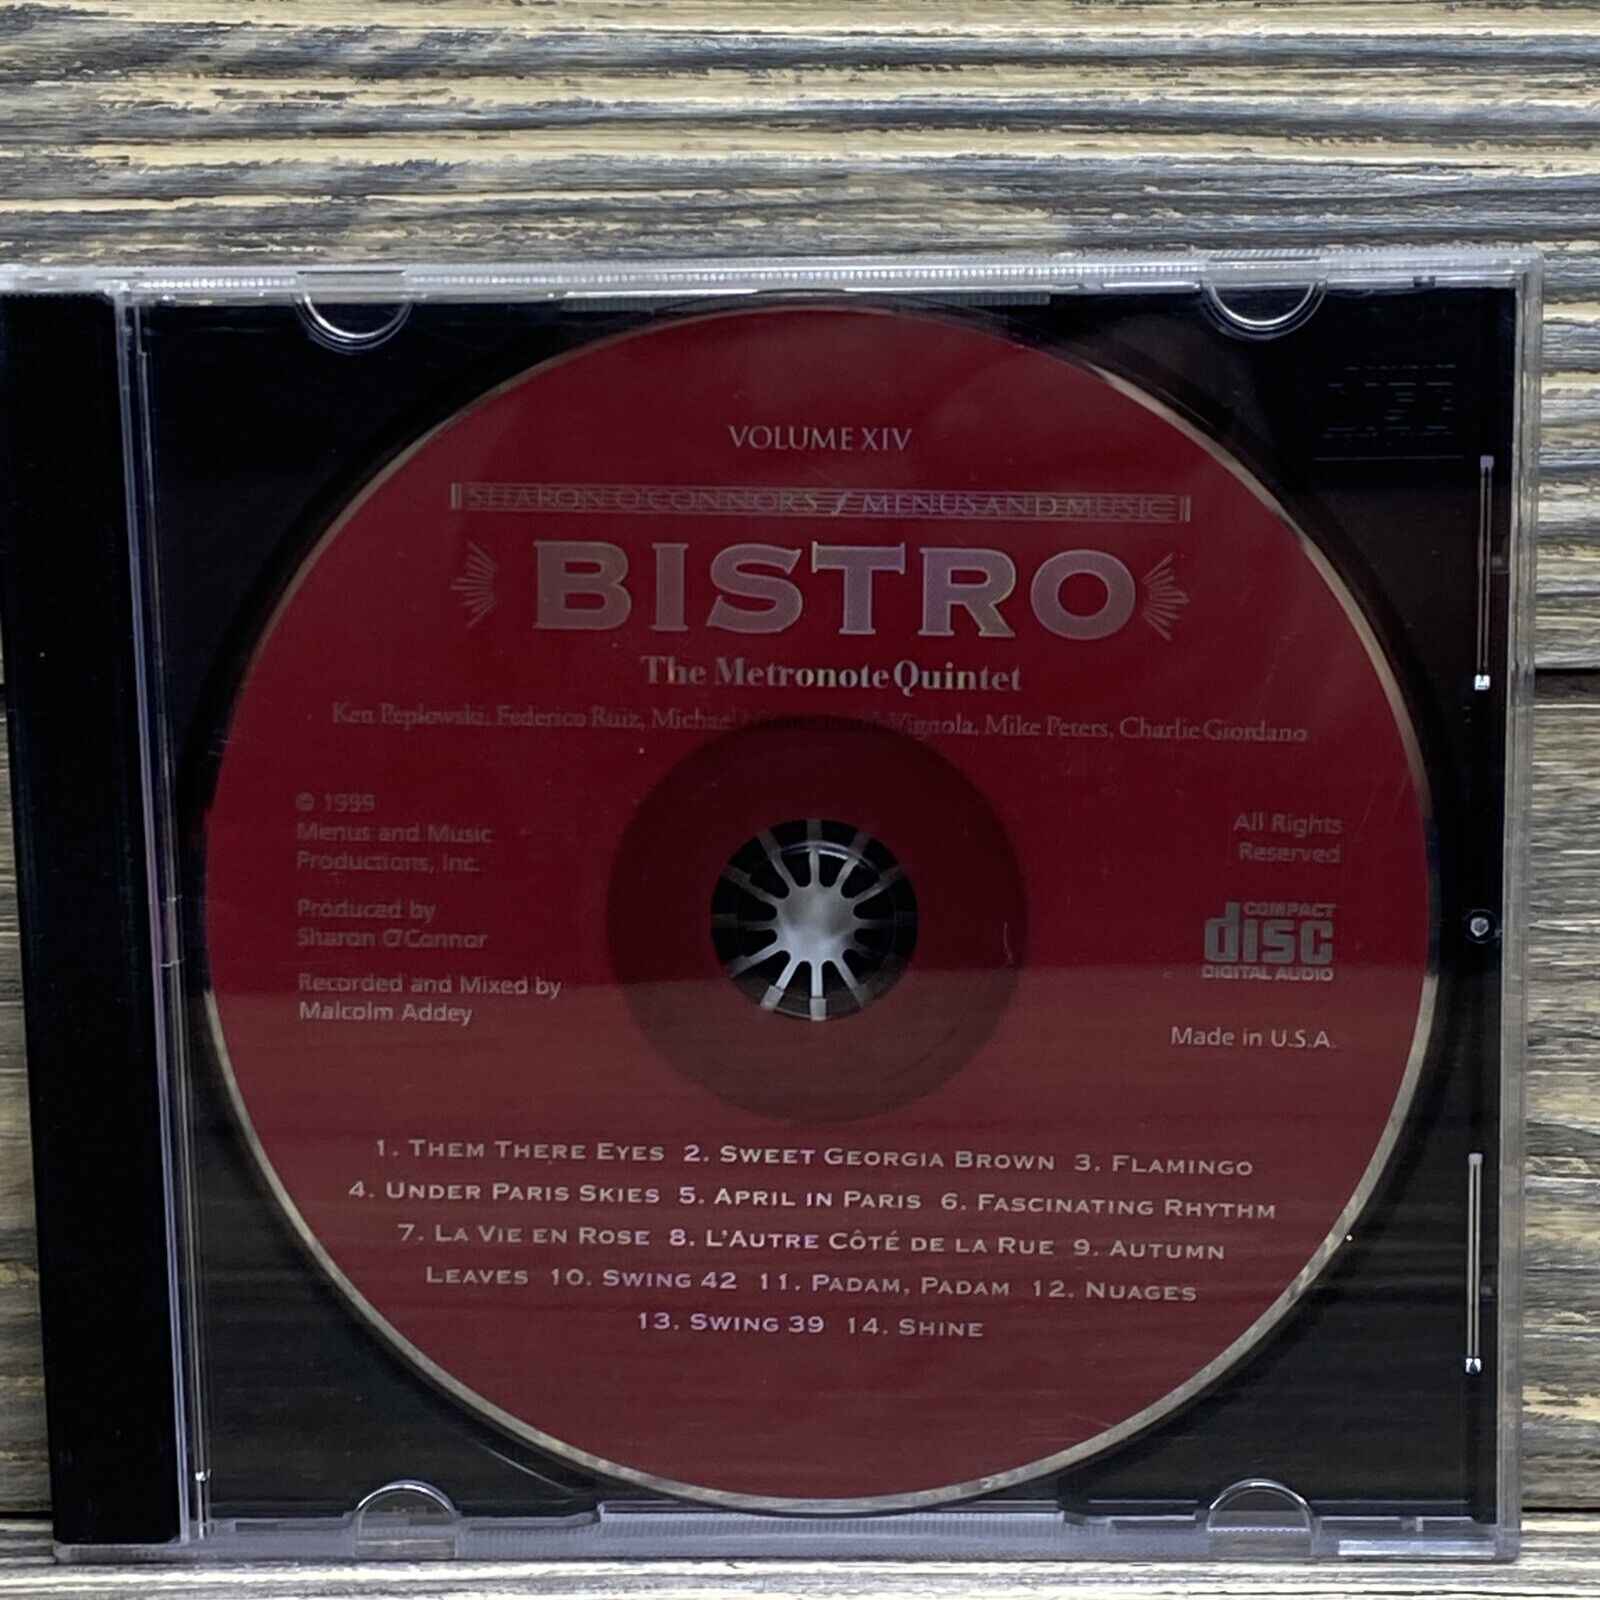 Vintage Menus and Music Production 1999 Bistro Vol XIV CD Metronome Quintet